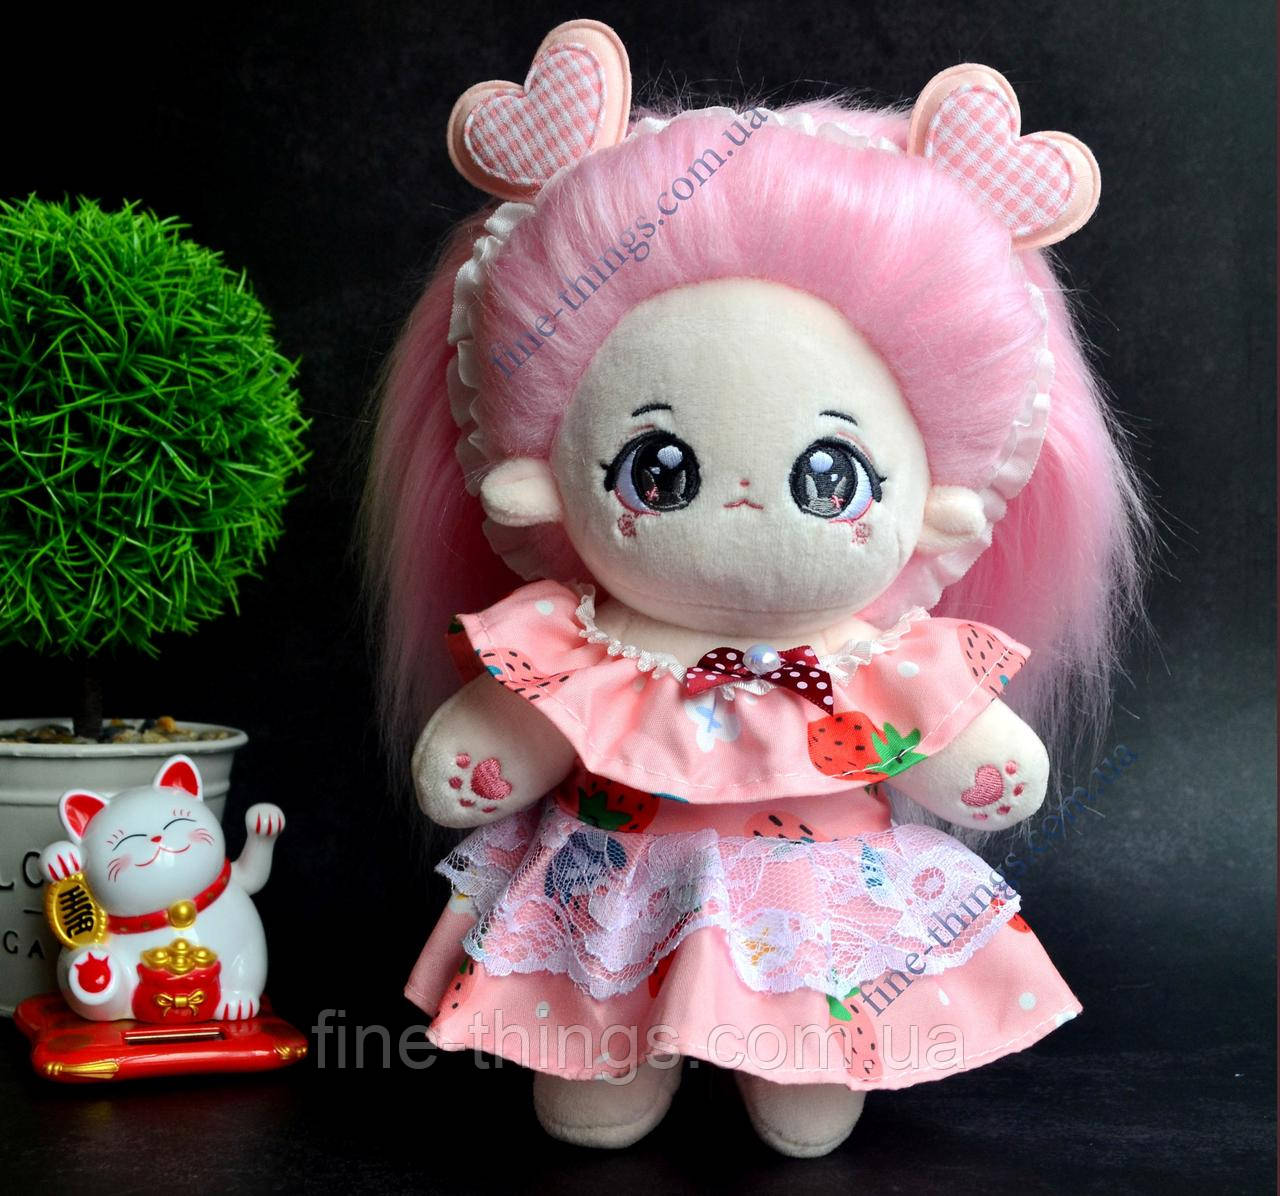 Одяг для Skzoo, рожева сукня для ляльок 20 см, СКЗУ одяг, сукня та пов'язка на голову для ляльки Геншин